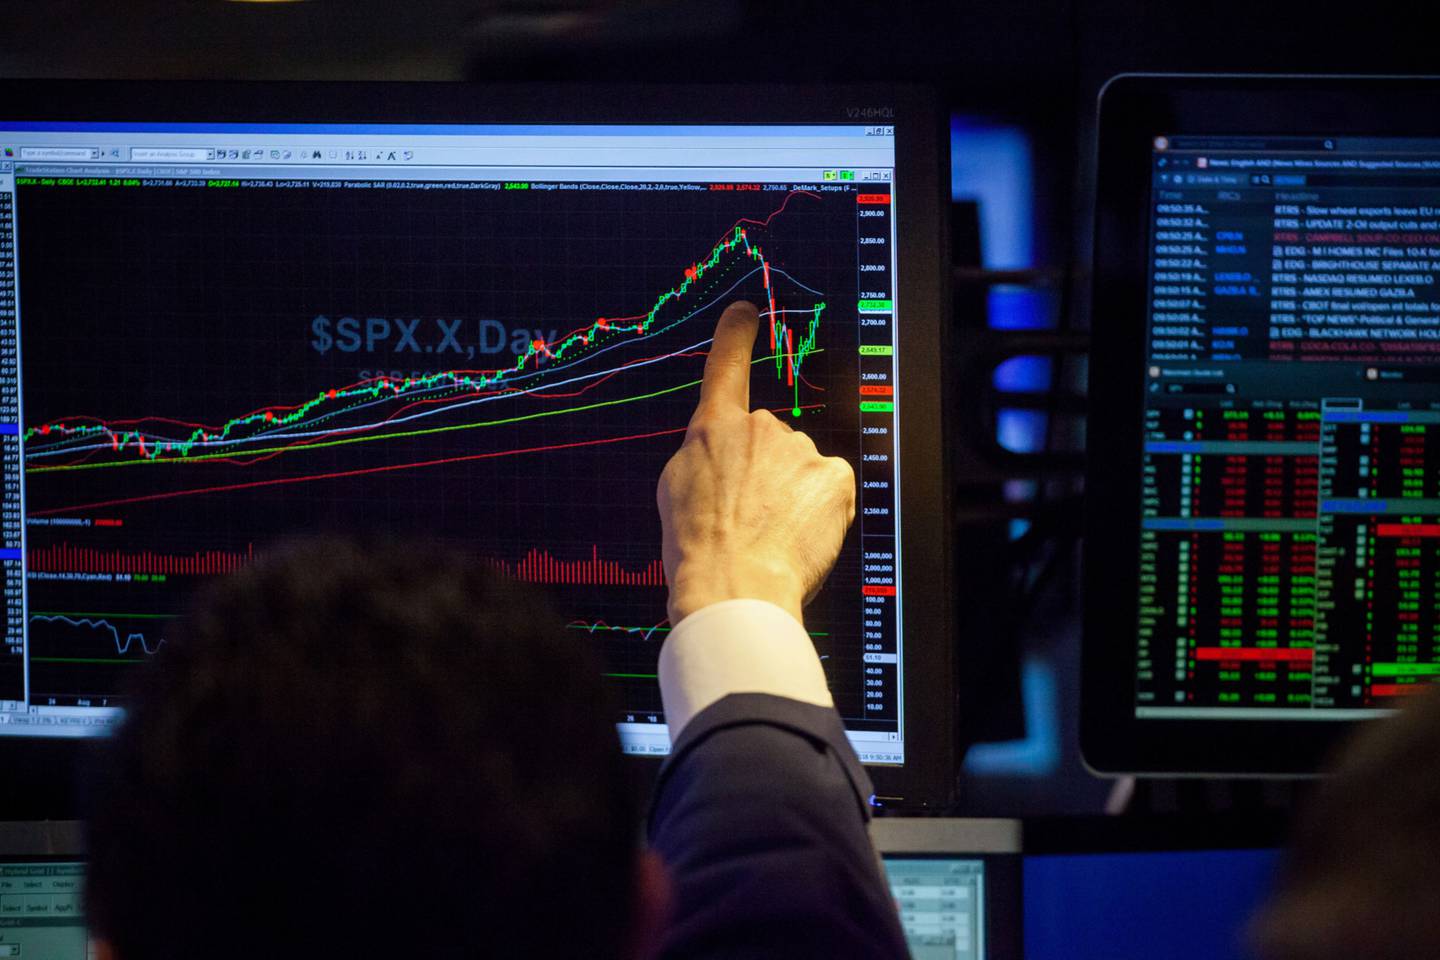 Un operador señala el monitor que muestra un gráfico del índice S&P 500 (SPX) en el piso de la Bolsa de Nueva York (NYSE) en Nueva York, Estados Unidos, el viernes 16 de febrero de 2018.  Fotógrafo: Michael Nagle/Bloomberg